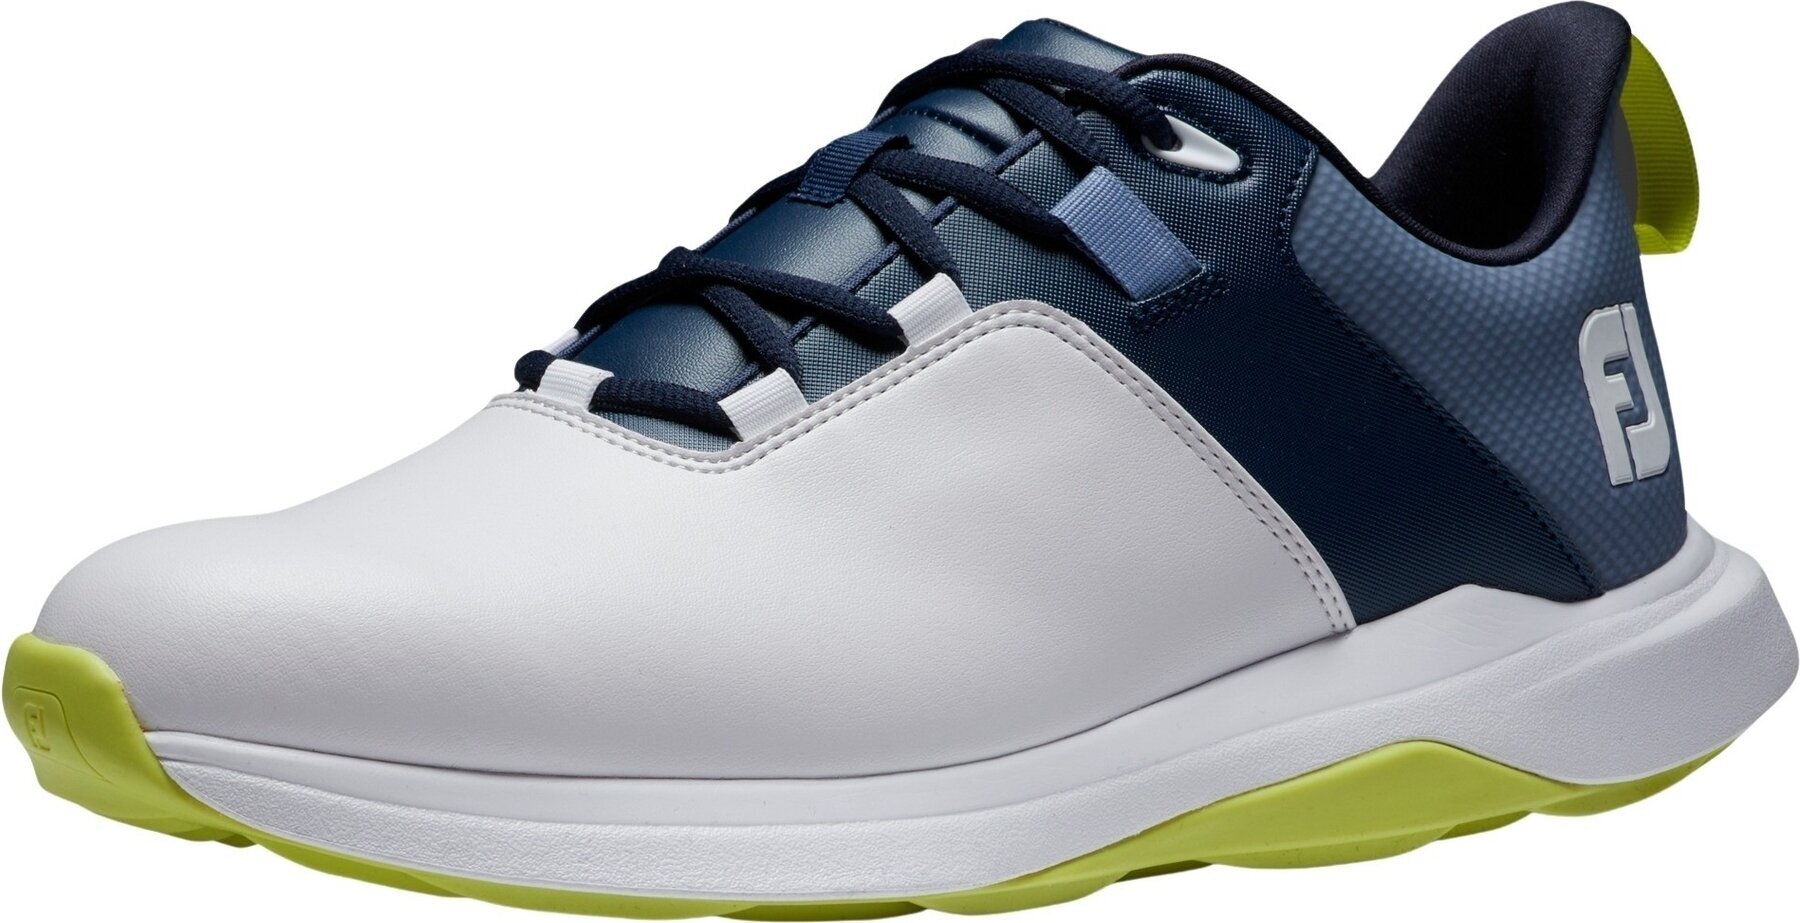 Herren Golfschuhe Footjoy ProLite Mens Golf Shoes White/Navy/Lime 41